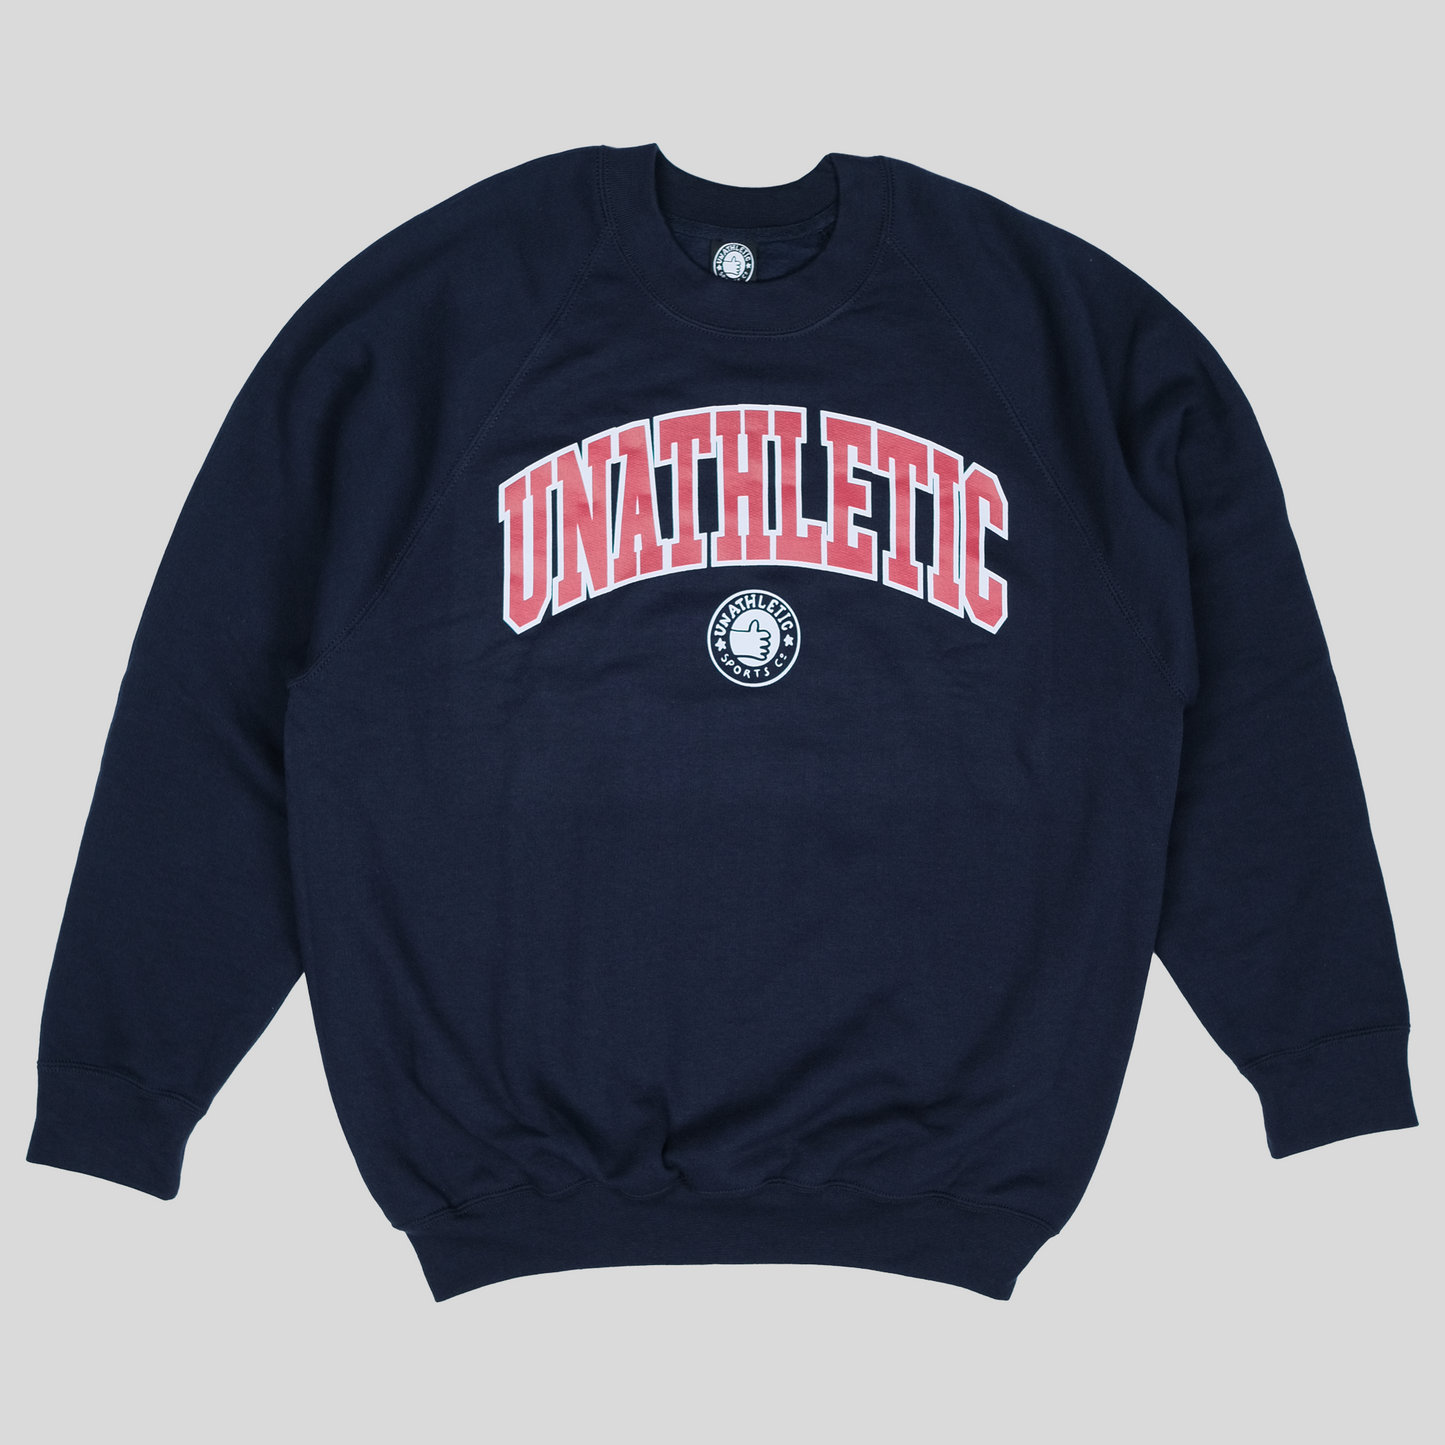 Unathletic Collegiate Sweater